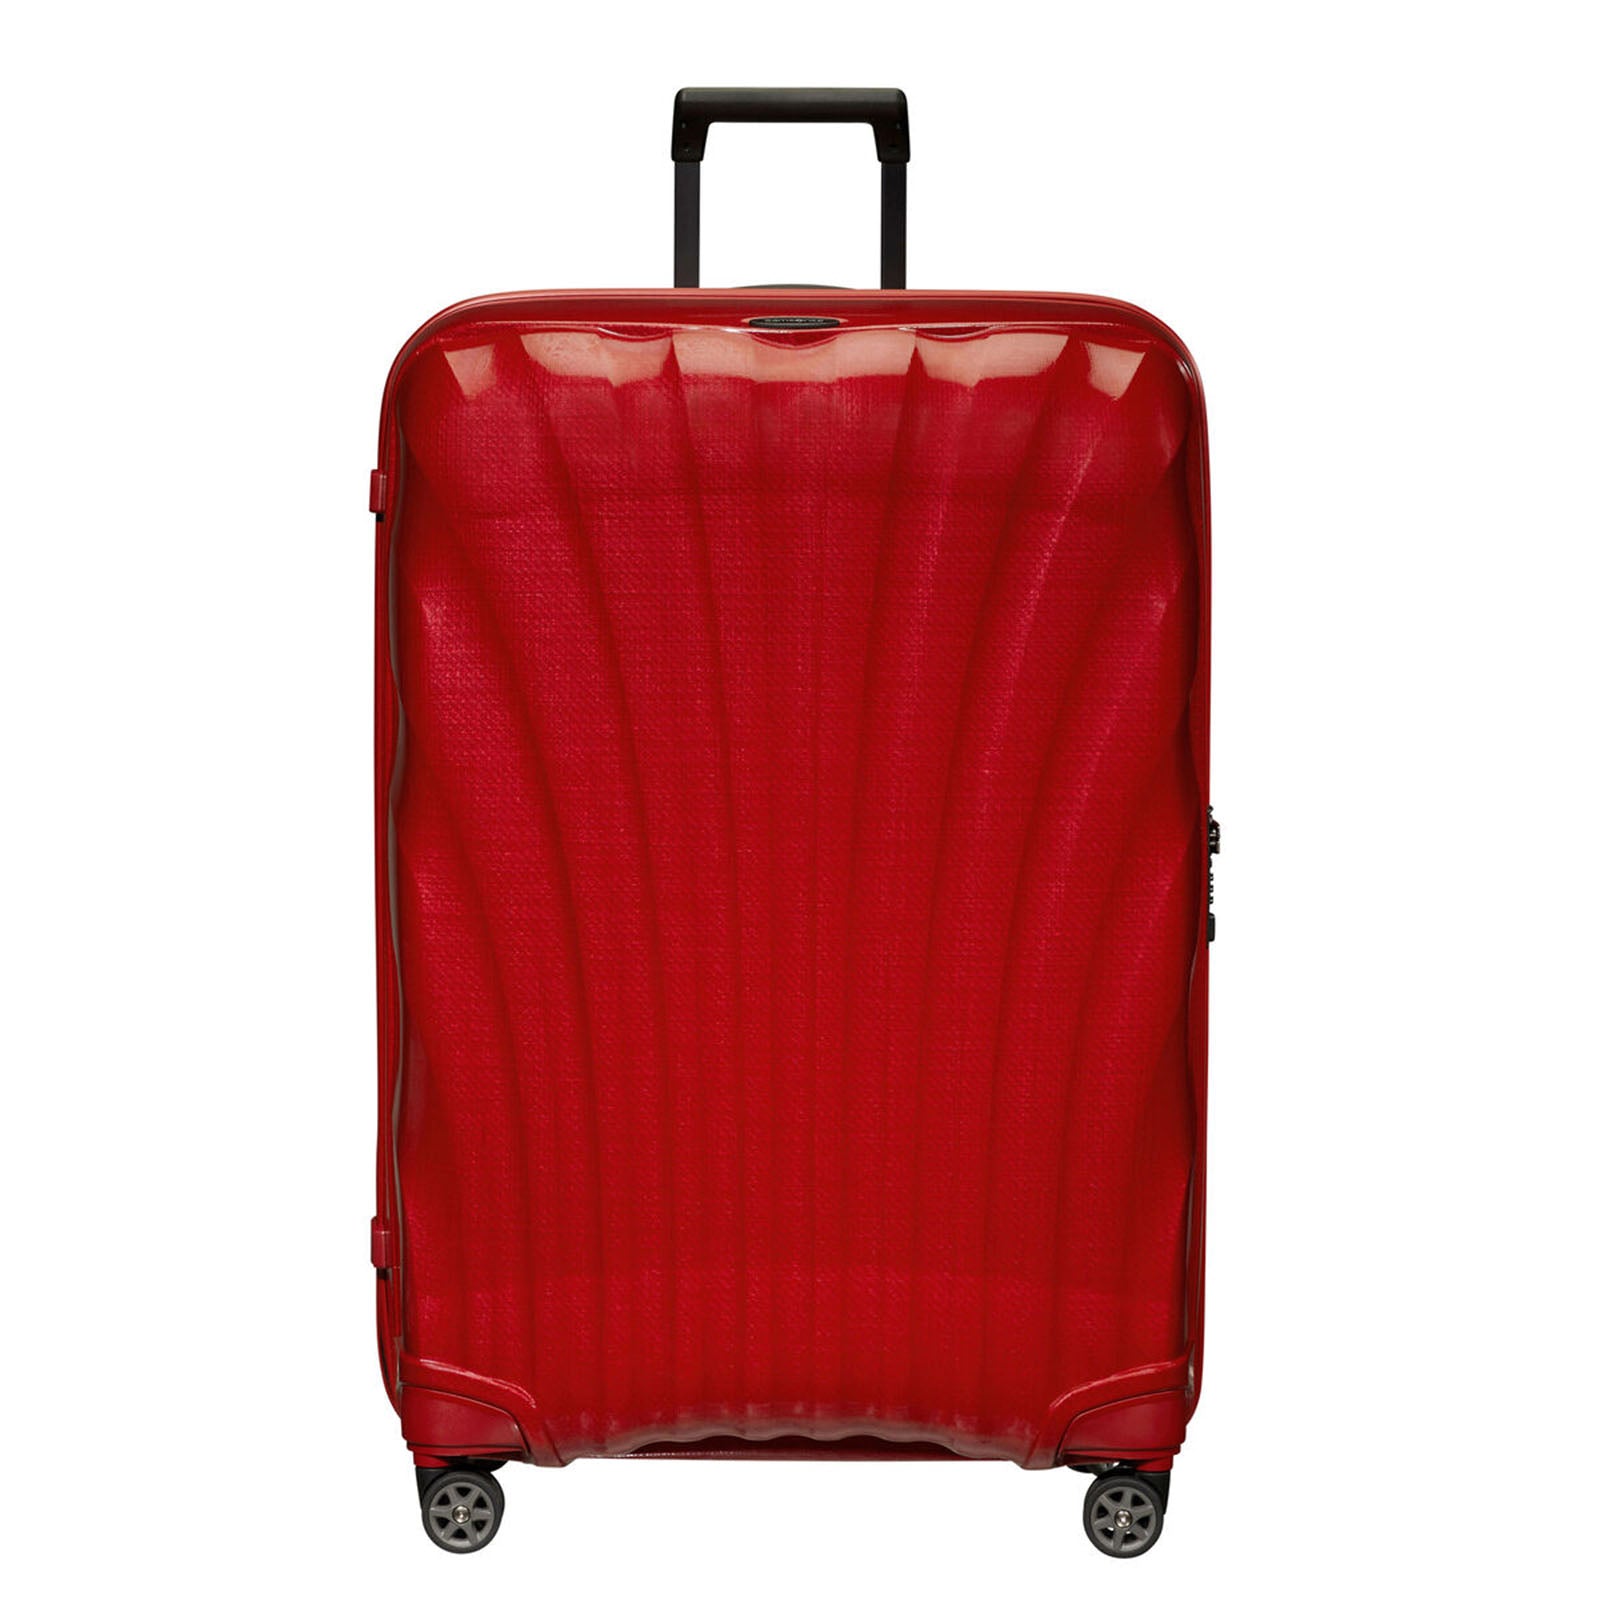 Samsonite-C-Lite-81cm-Suitcase-Chili-Red-Front